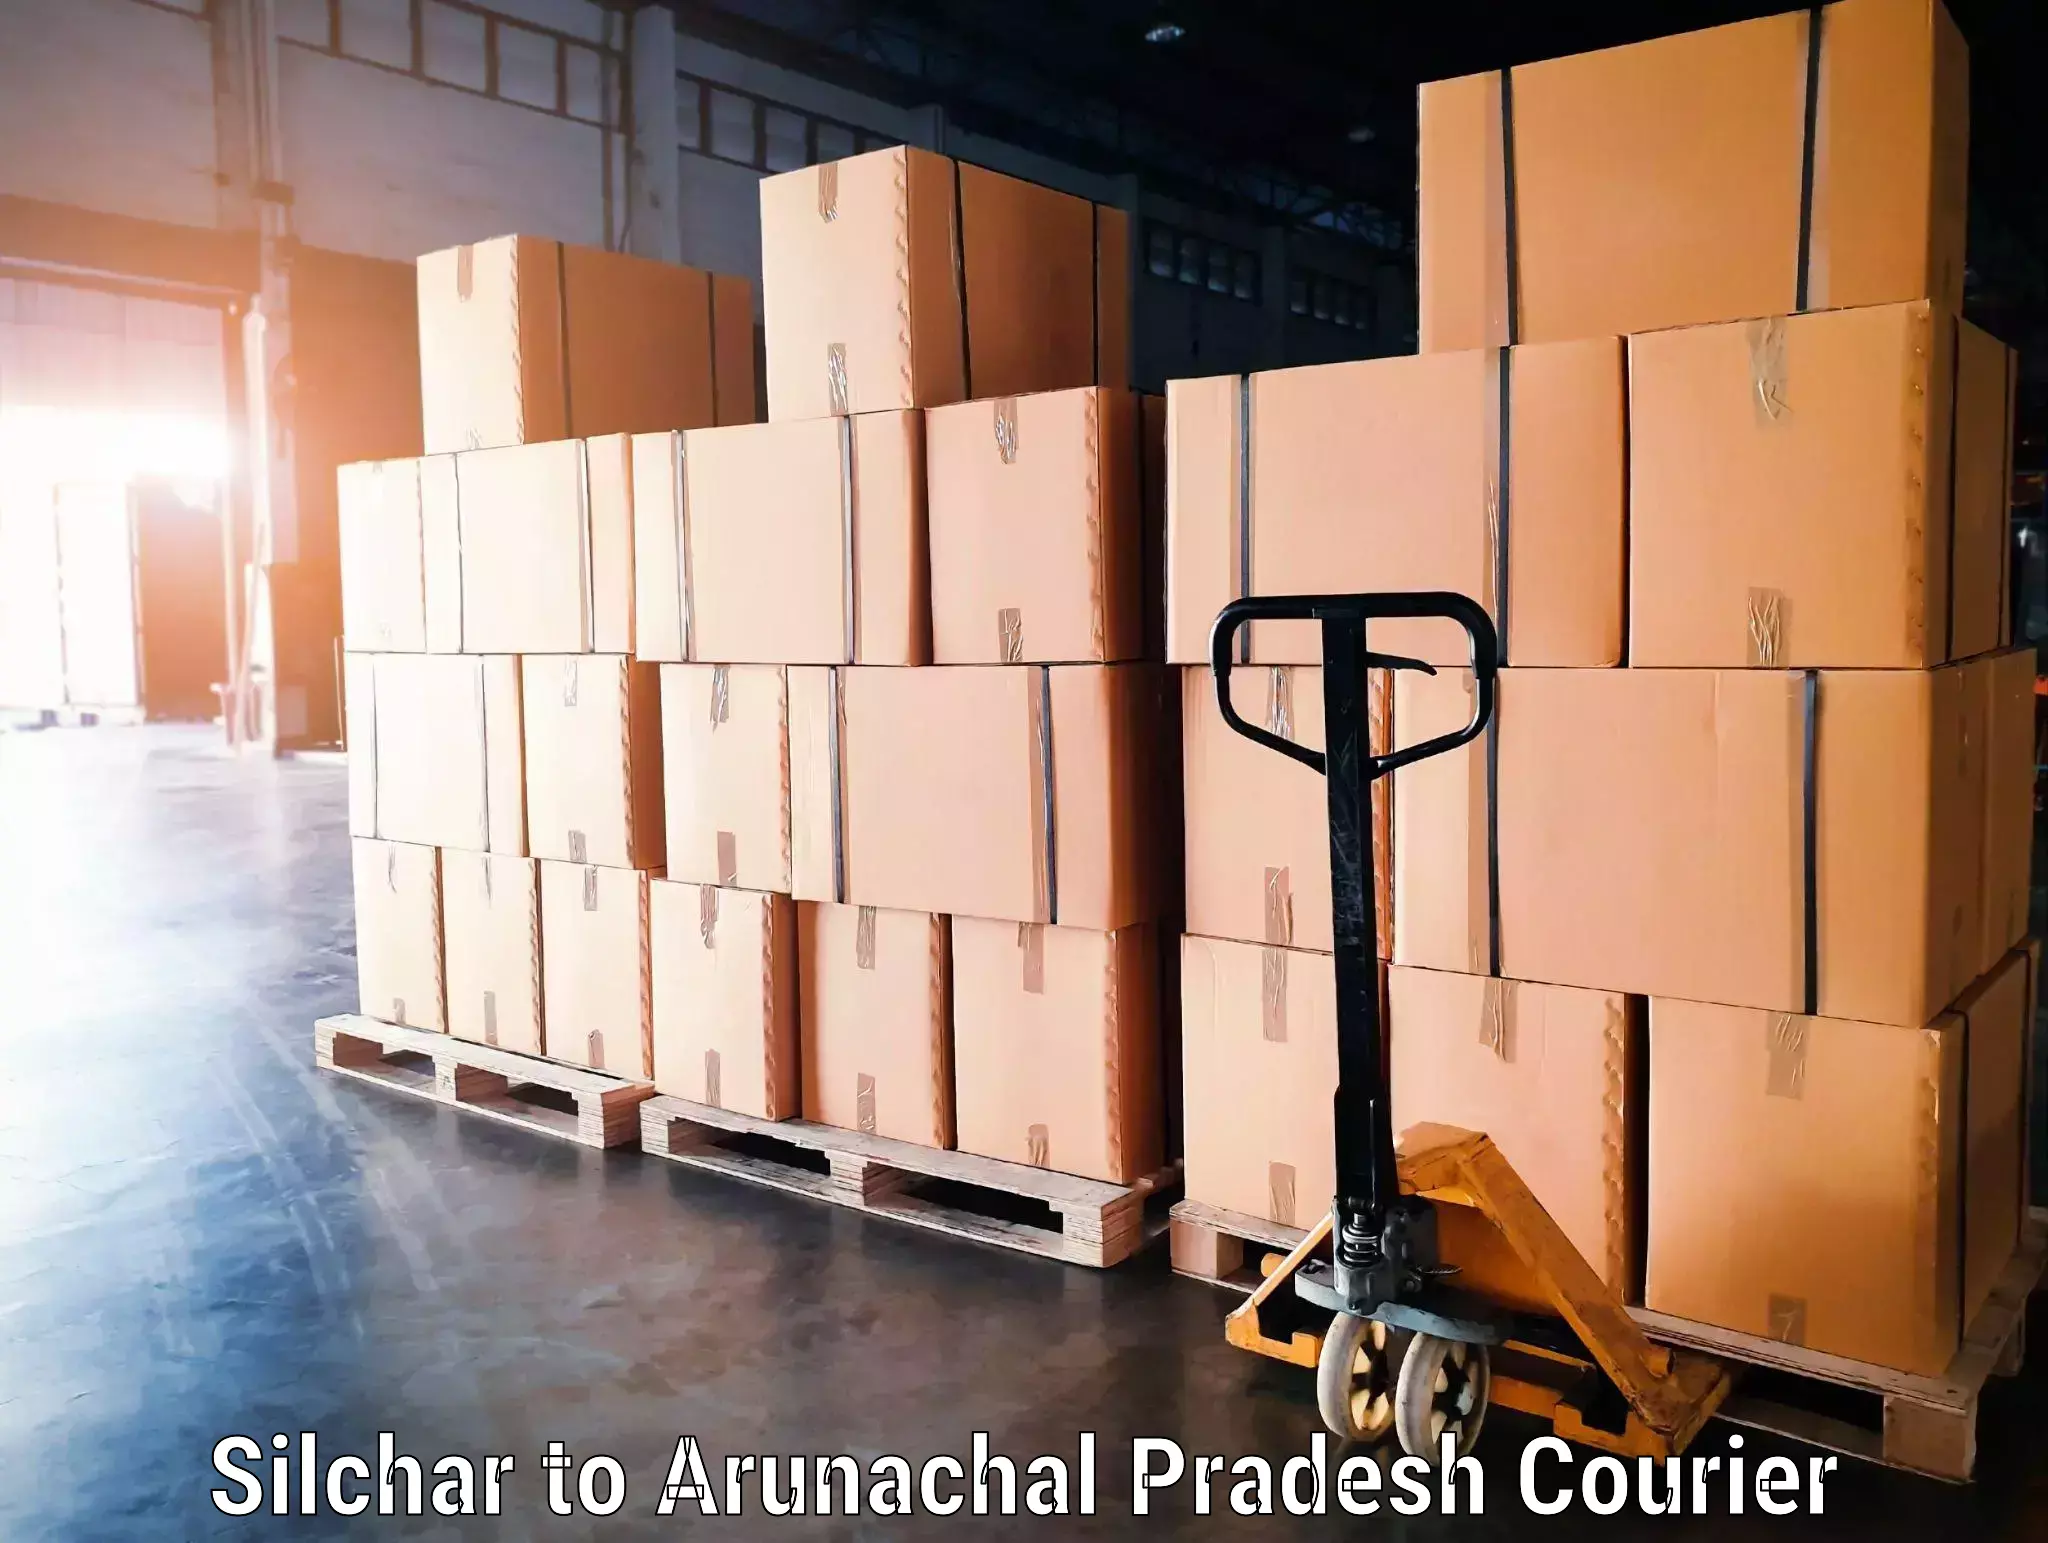 Luggage transport consultancy Silchar to Arunachal Pradesh